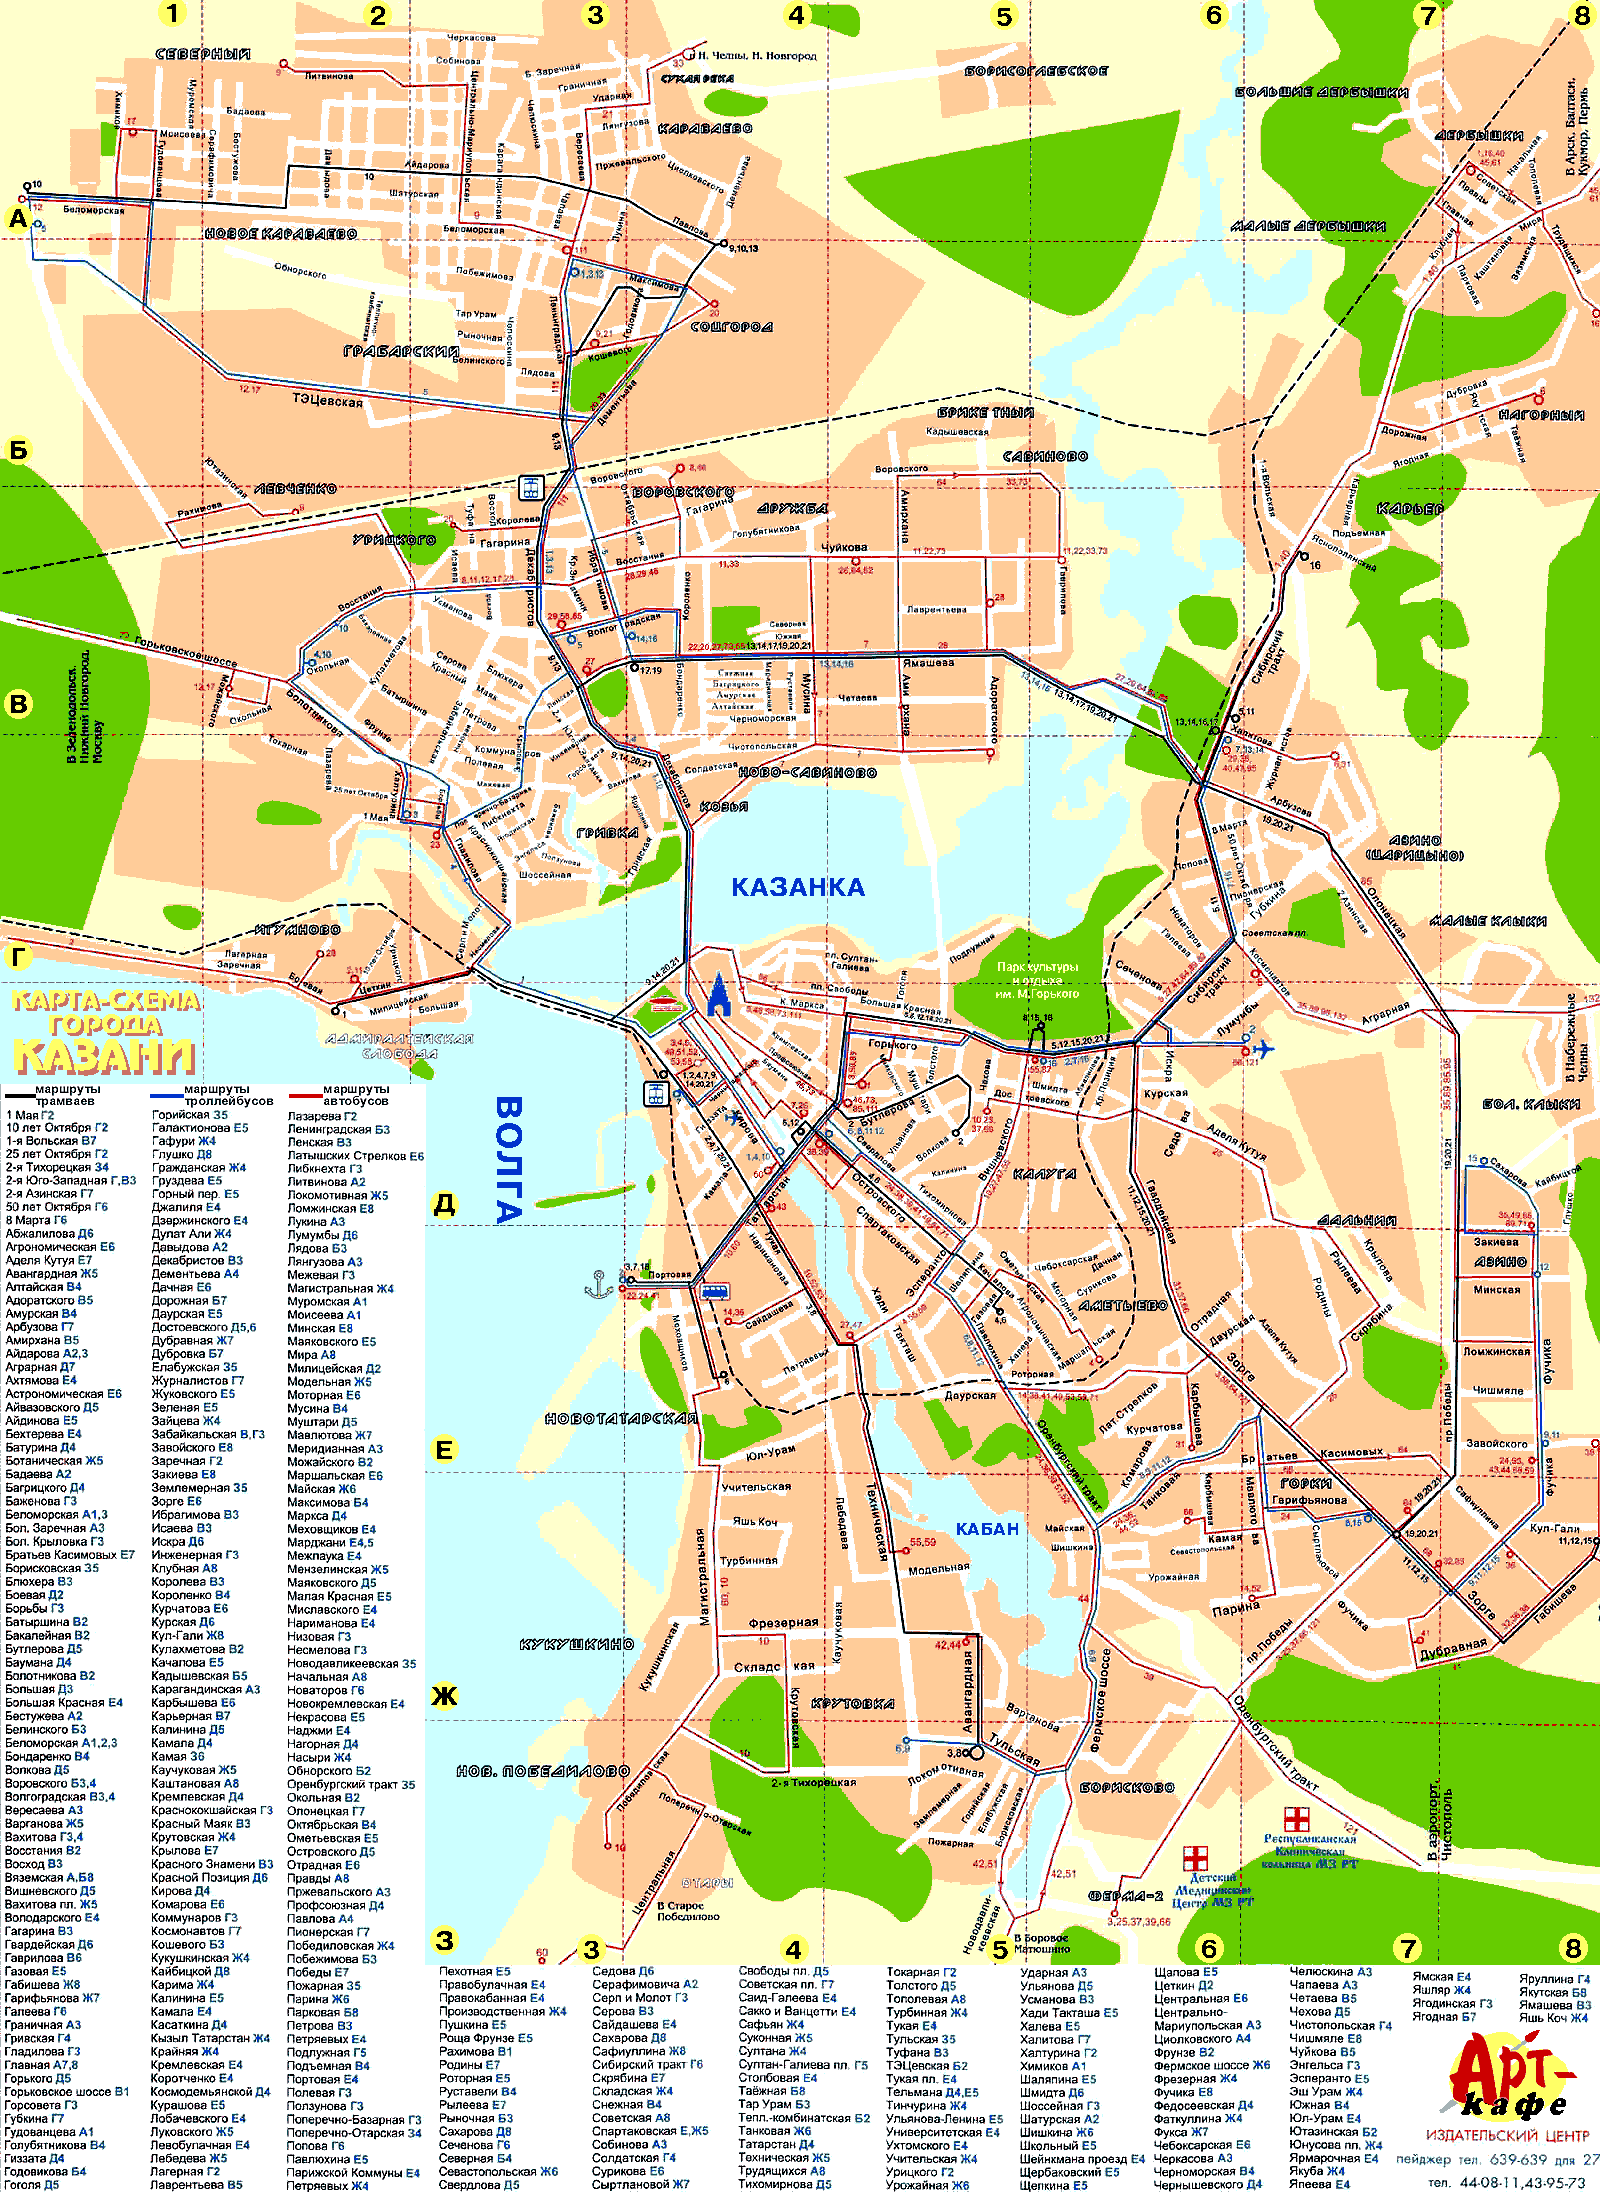 Map of Kazan